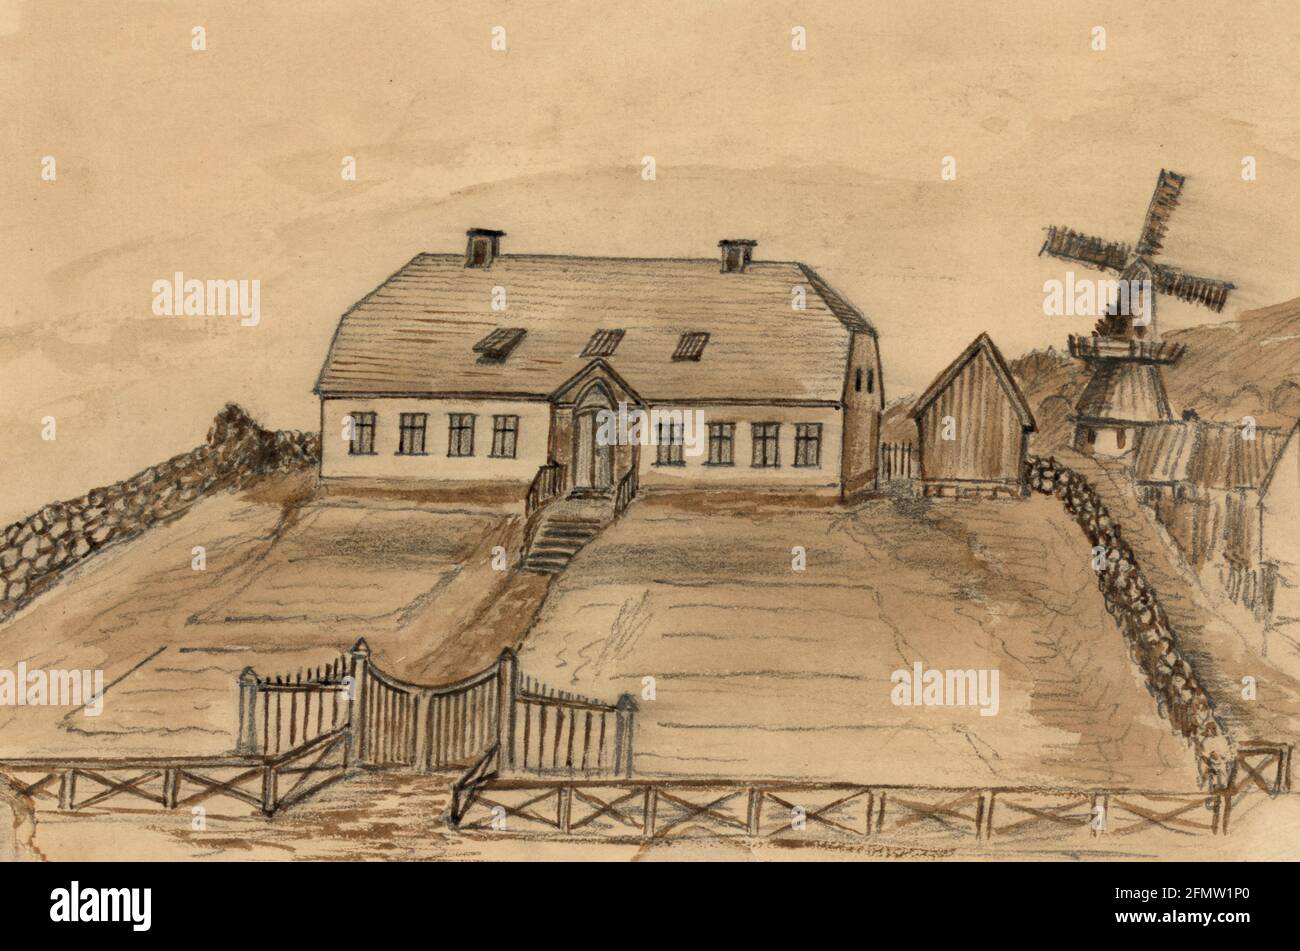 Residenza del governatore Reykjavik - disegno mostra una grande casa a due piani circondata da un muro di pietra, la residenza del governatore d'Islanda nella città capitale, Reykjavk. Bayard Taylor visitò l'Islanda nel 1862, forse in viaggio verso la Russia Foto Stock